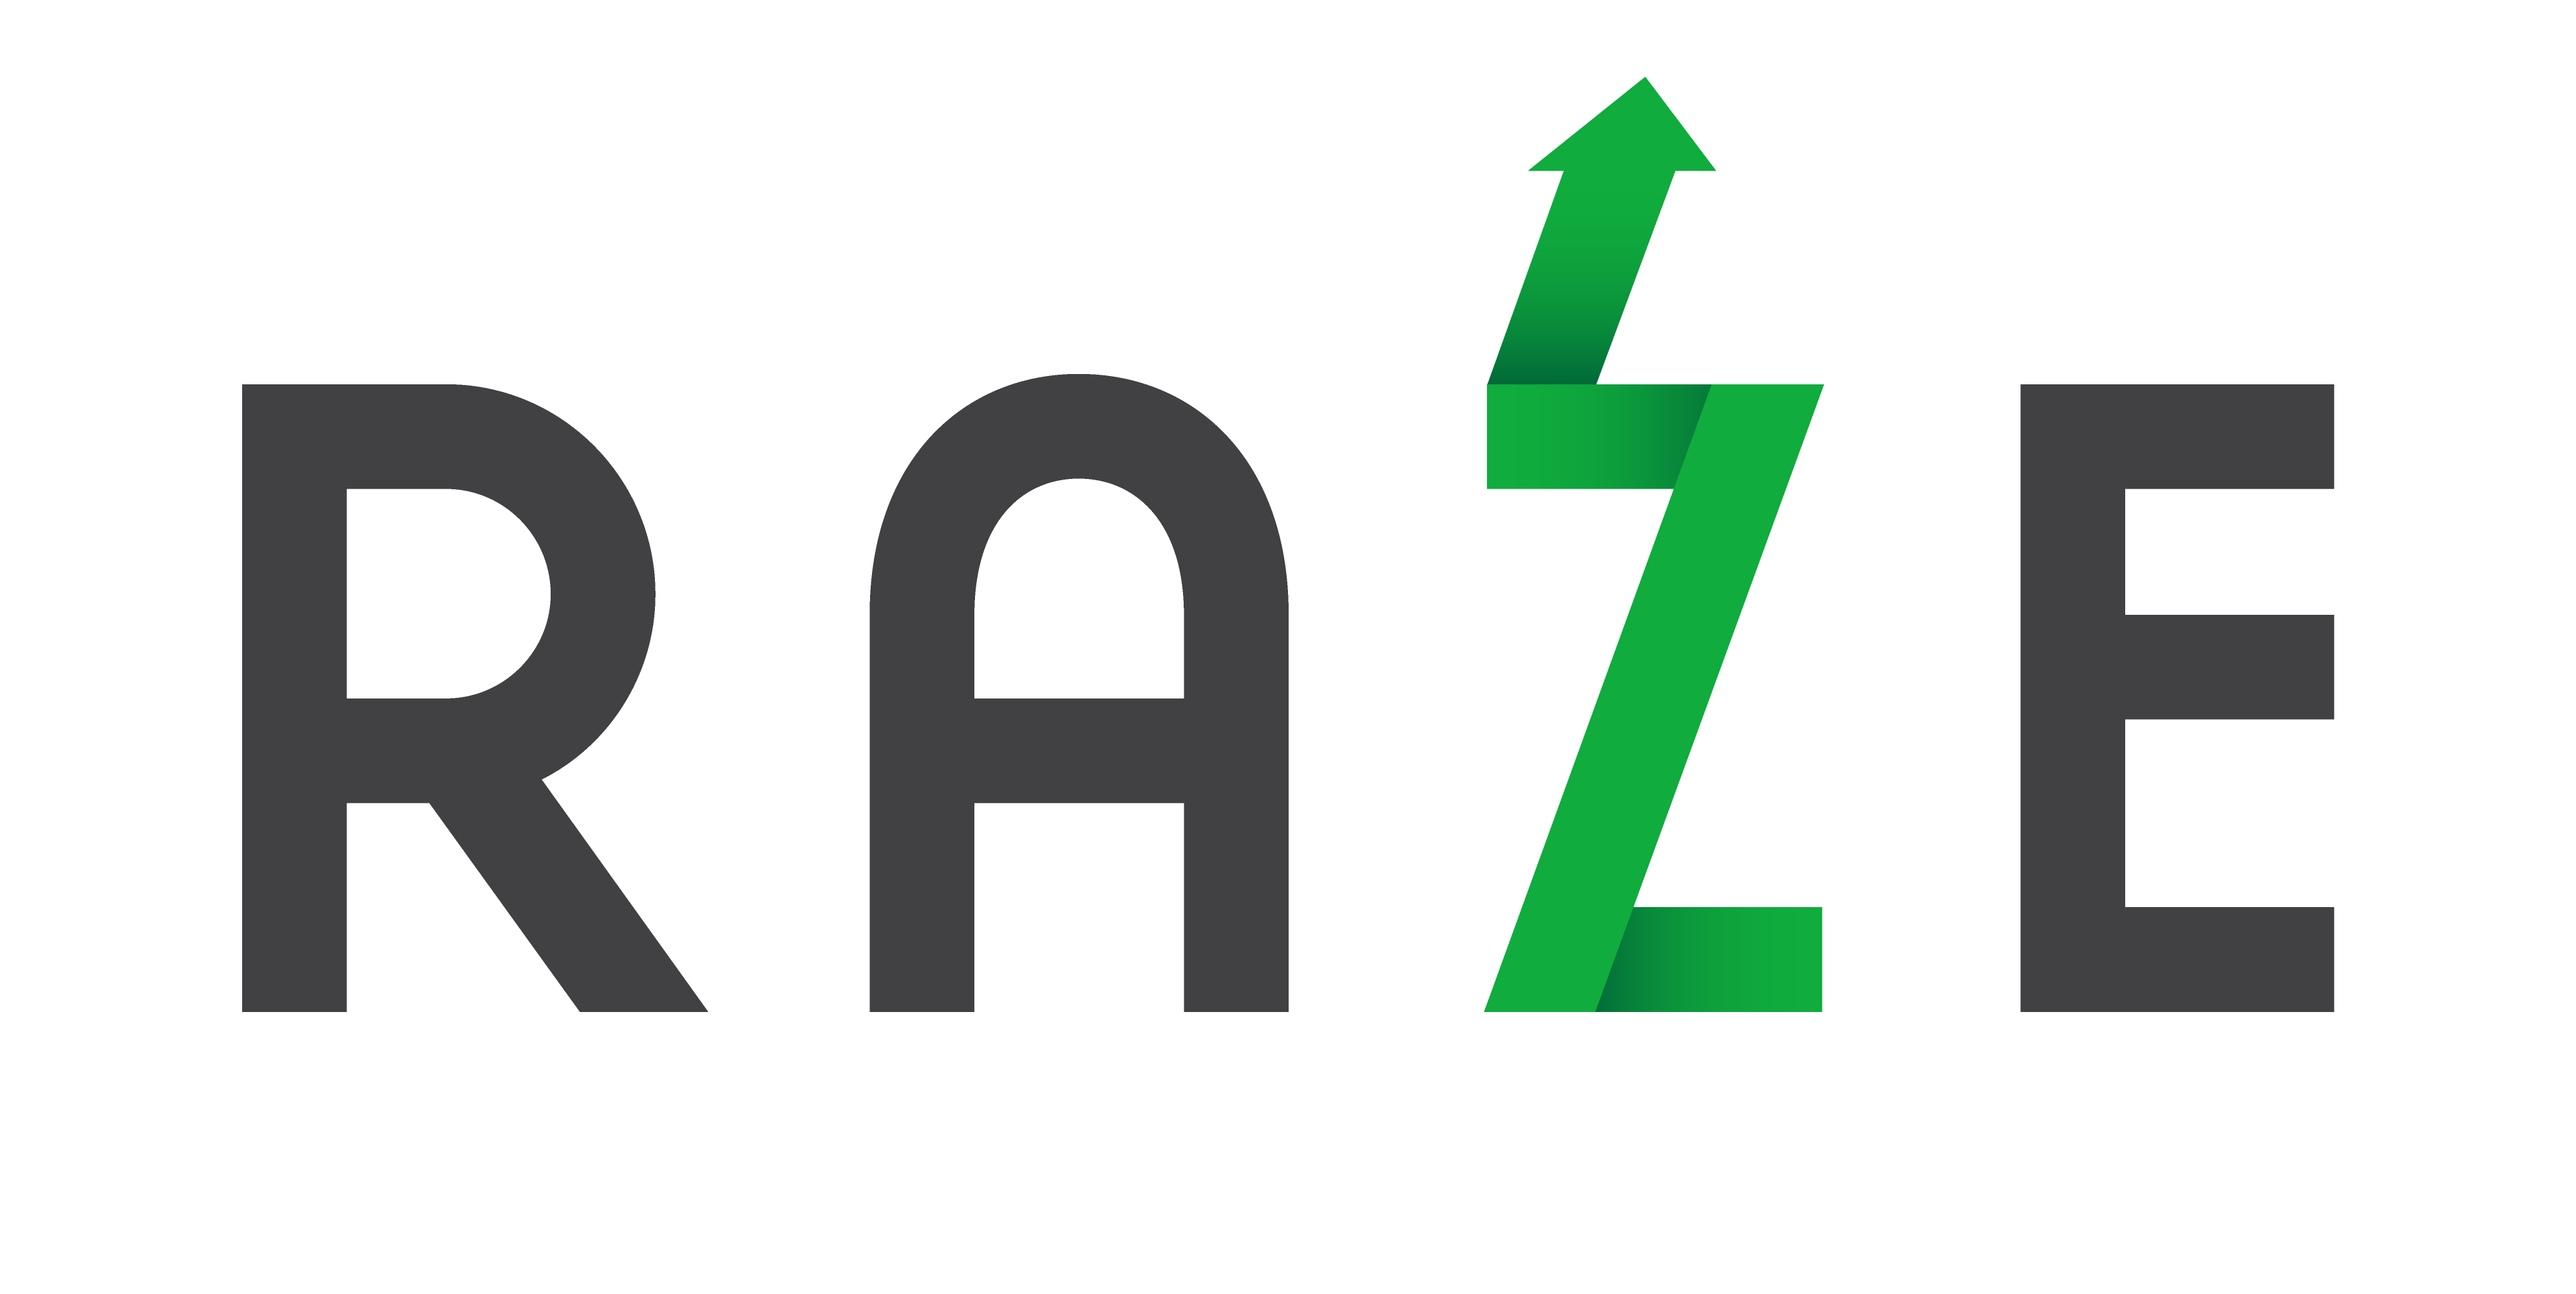 Raze logo